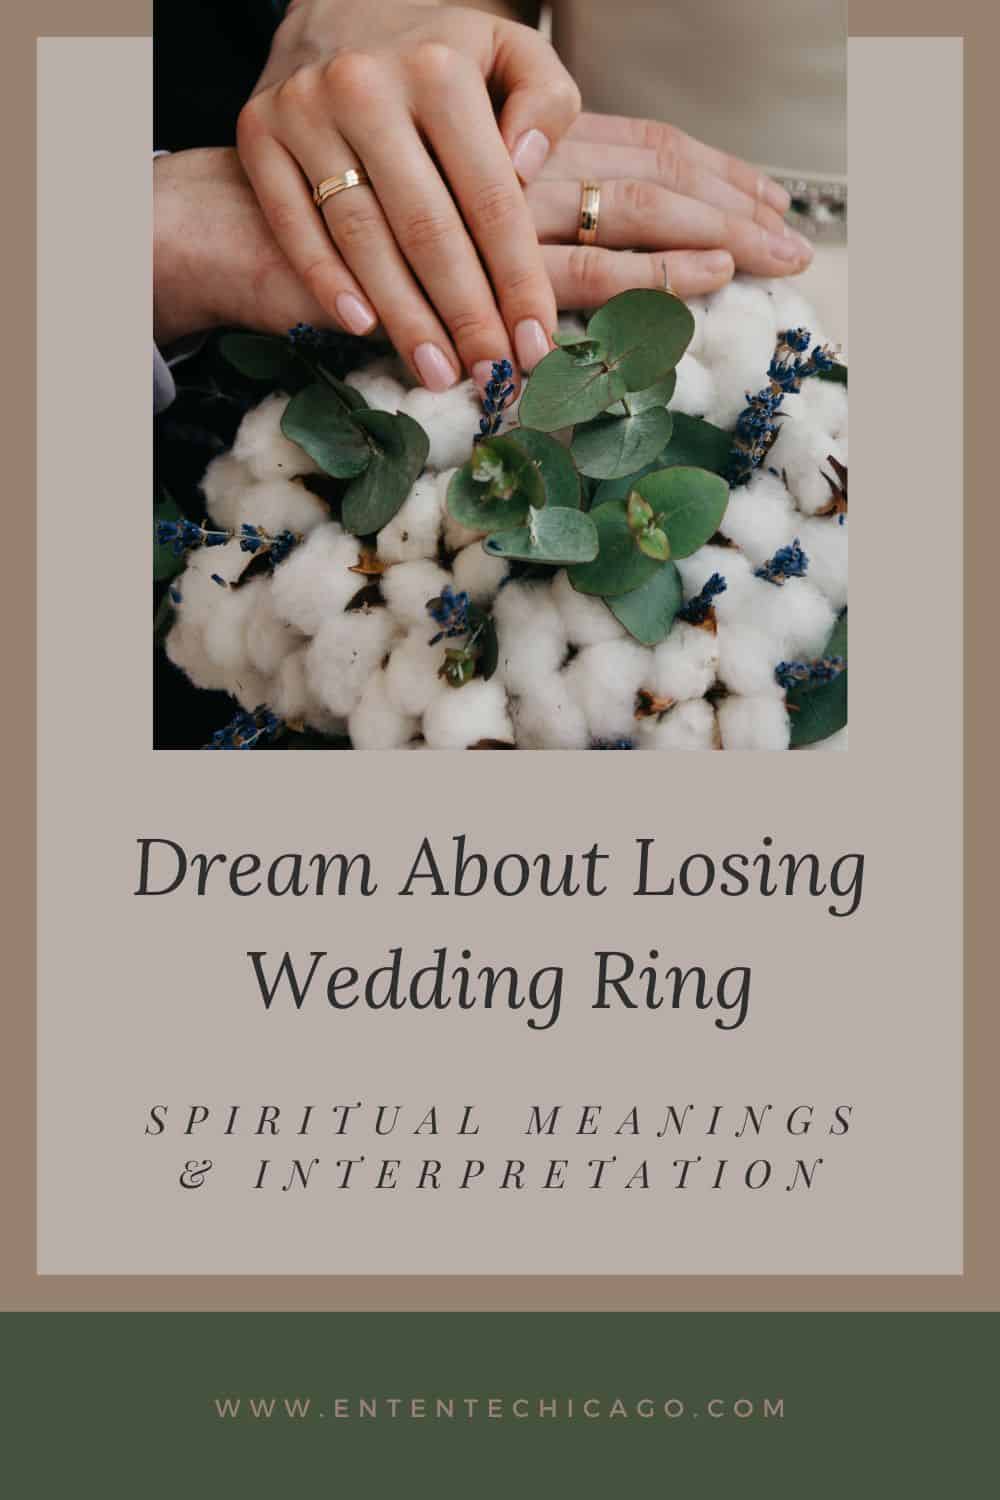  Interpretació dels somnis de perdre l'anell de casament